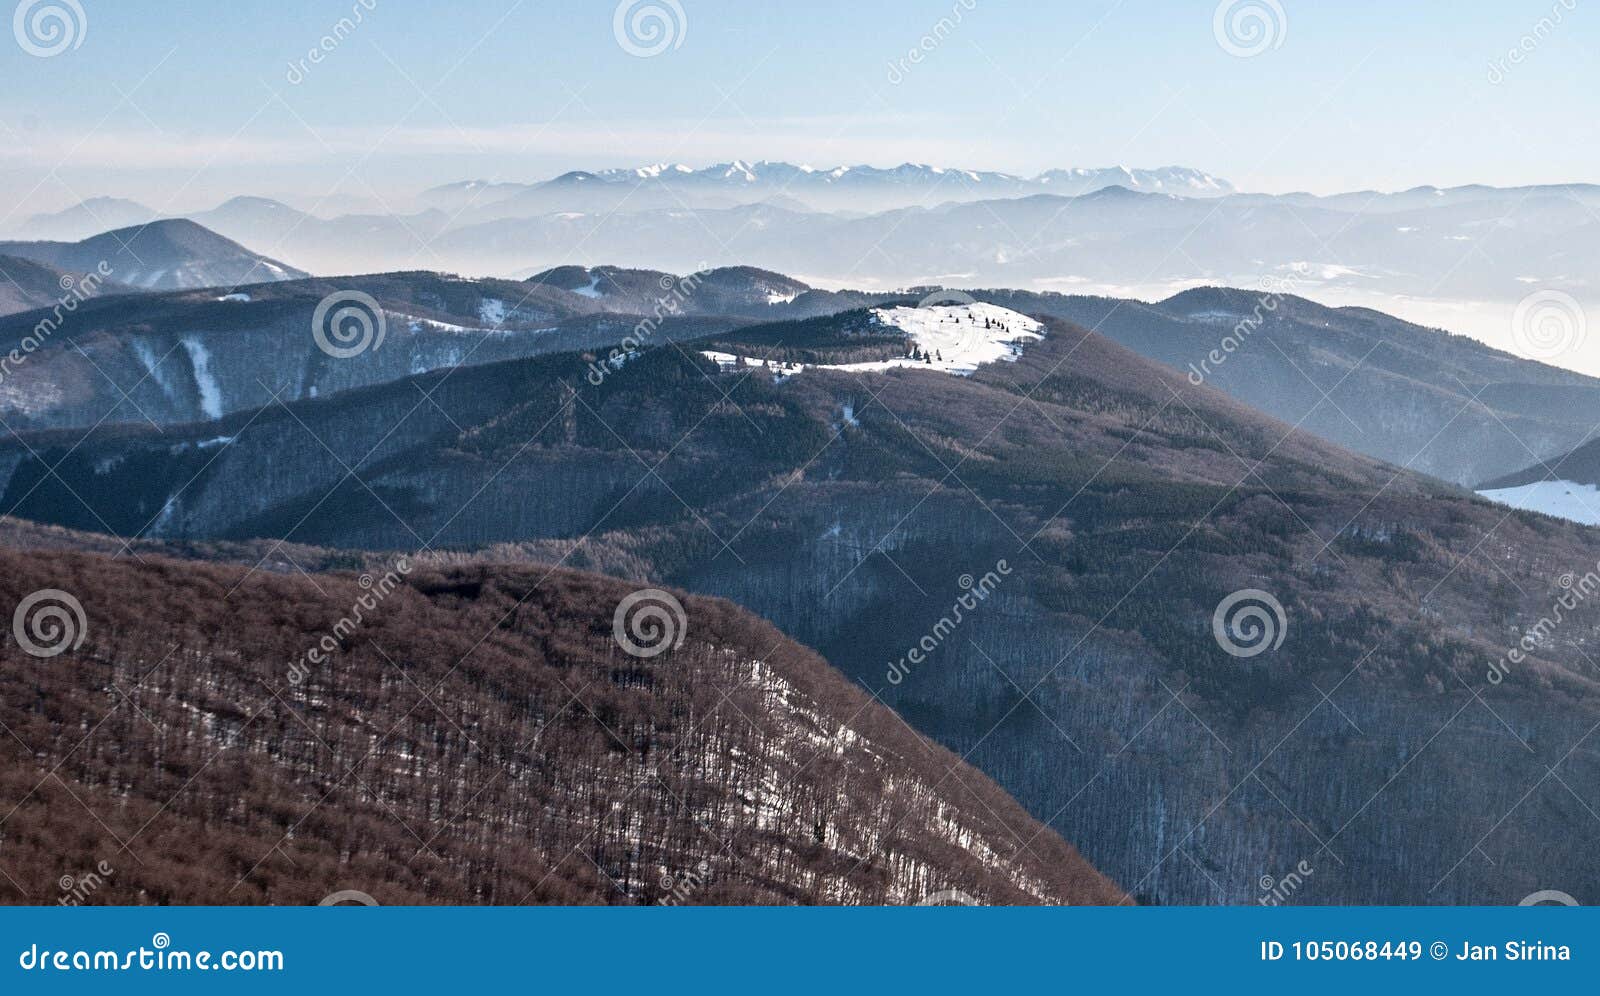 斯洛伐克风景在冬天 库存照片. 图片 包括有 森林, 室外, 高地, 本质, 高潮, 远征, 横向, 峰顶 - 110442516